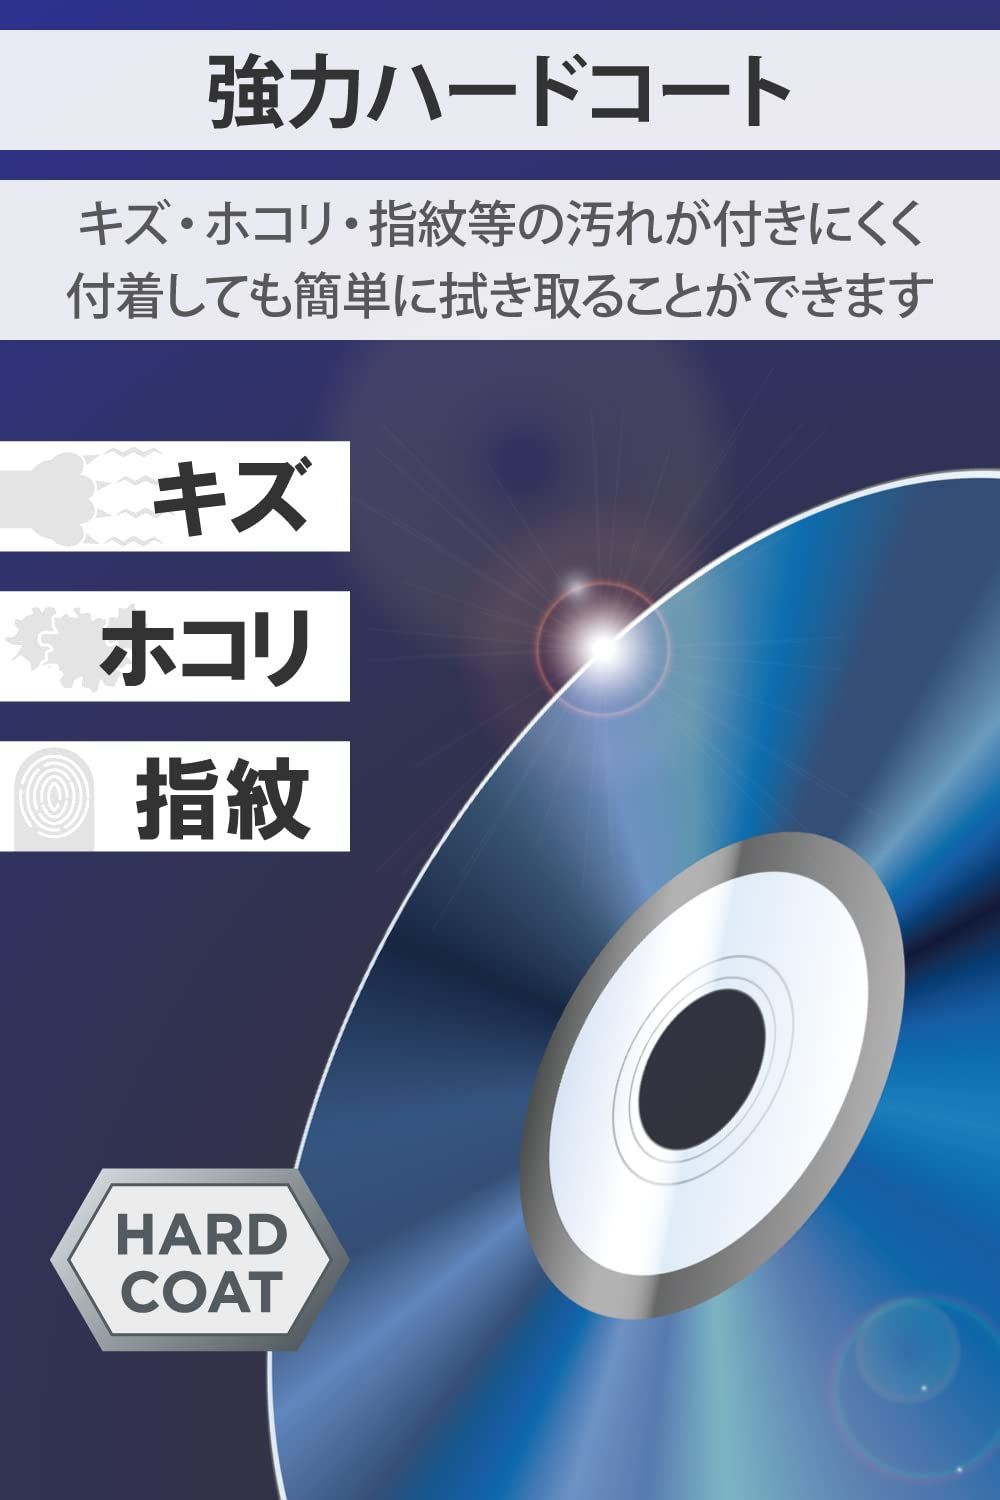 ブルーレイディスク 片面2層 ハードコート BD-R 50枚  バーベイタム1回録画用